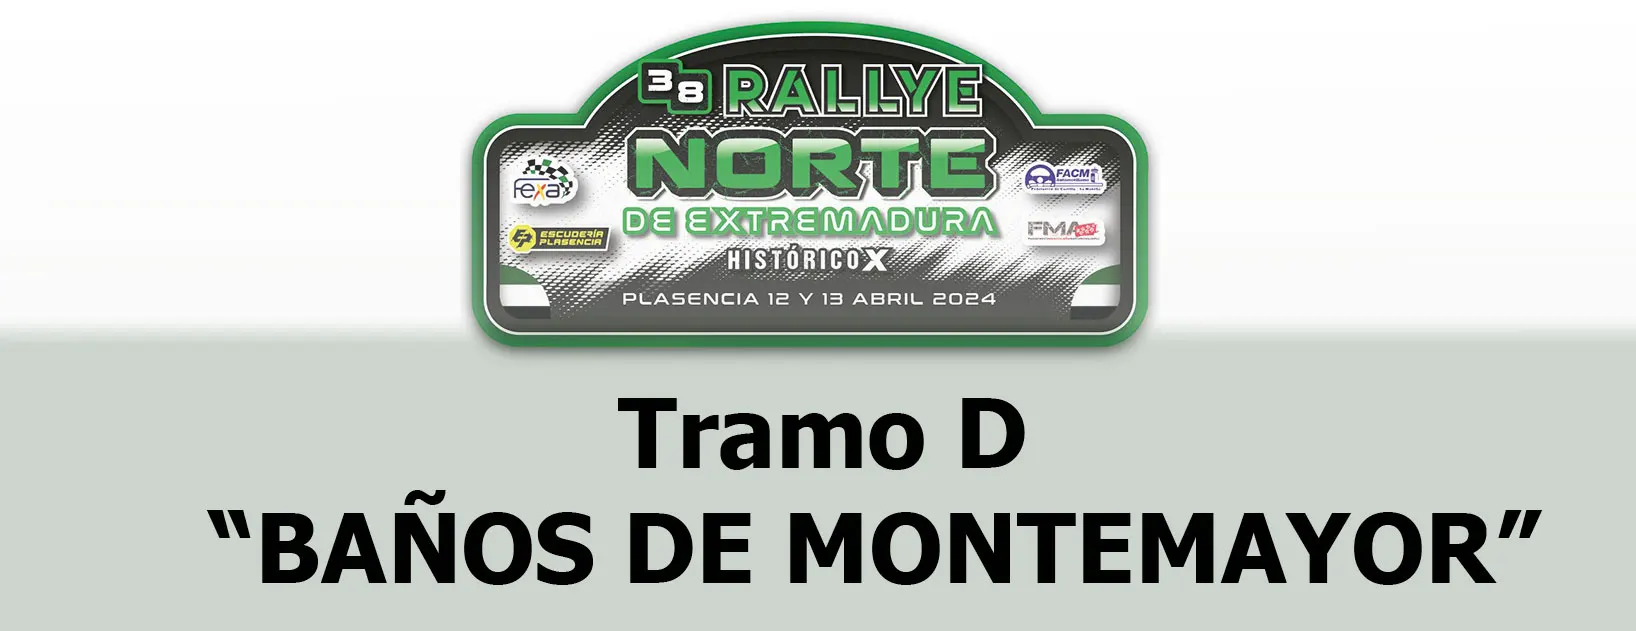 TC D2 - "Baños de MonteMayor", Sale el vehículo 1 a las 18:47